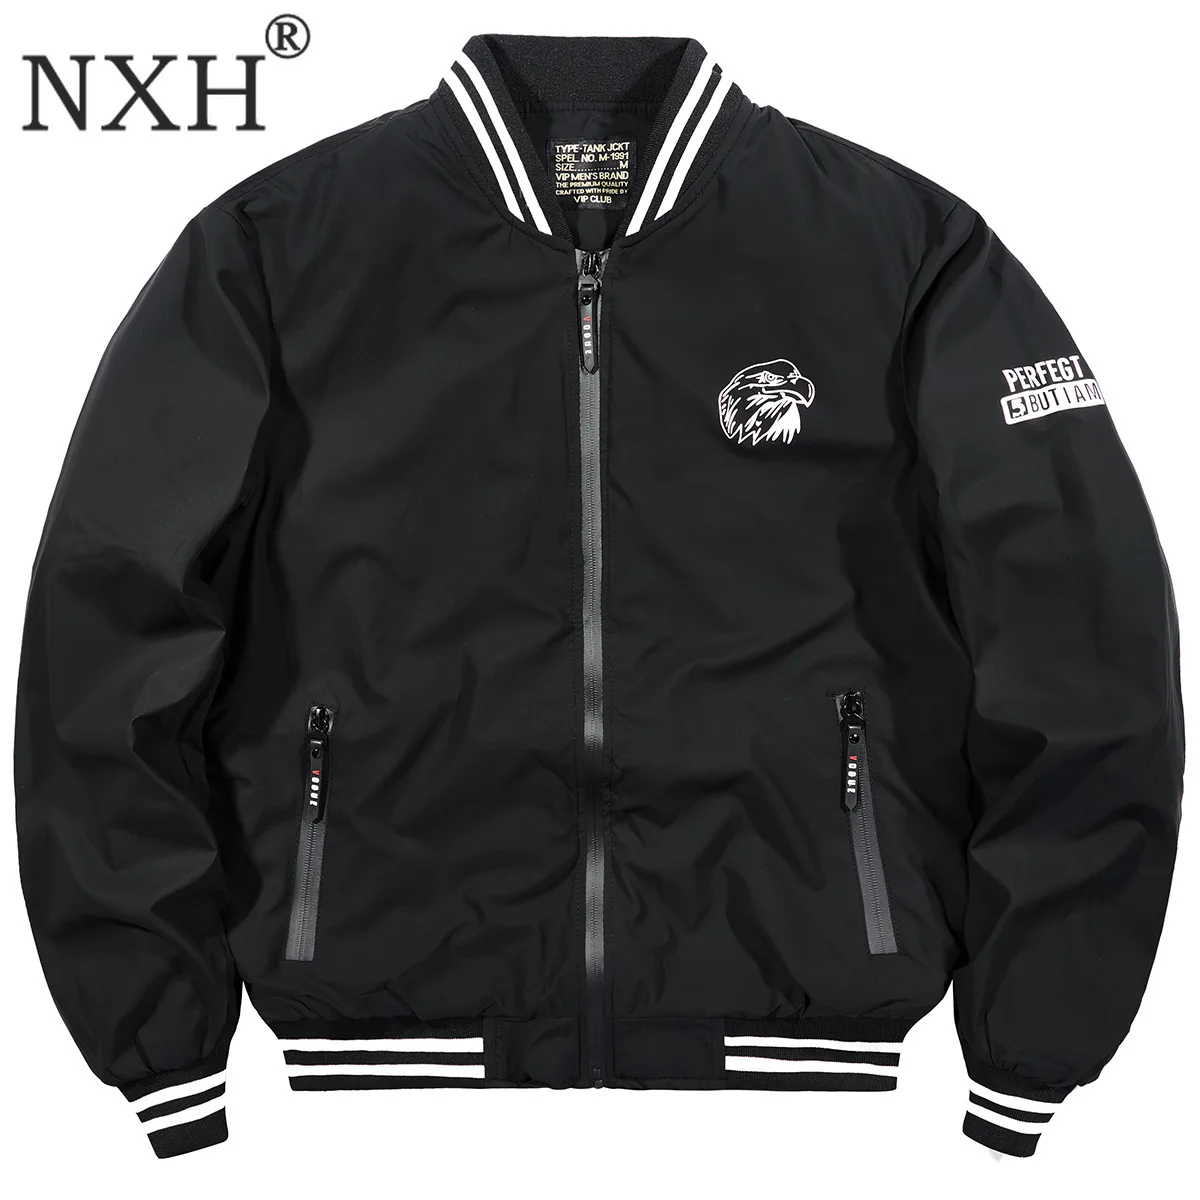 NXH для мужчин бейсбол воротник Jakcet толстый бомбер Jaket теплые куртки флис мужской зимнее пальто с орлом вышивка